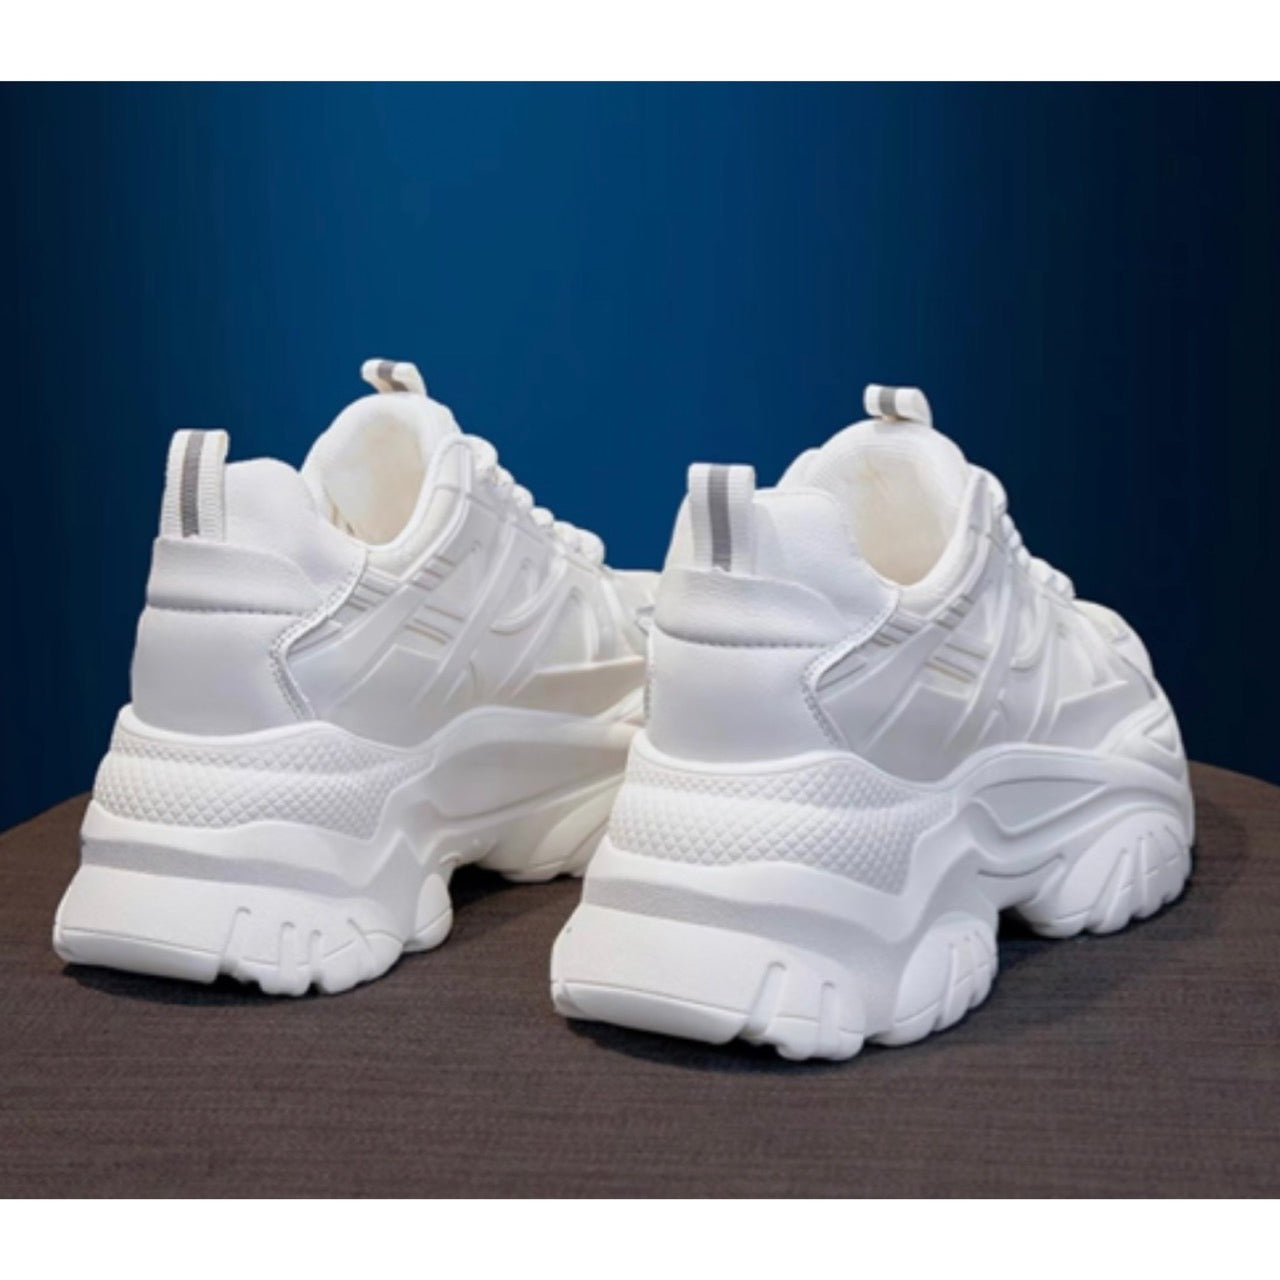 白色高科技厚底运动鞋